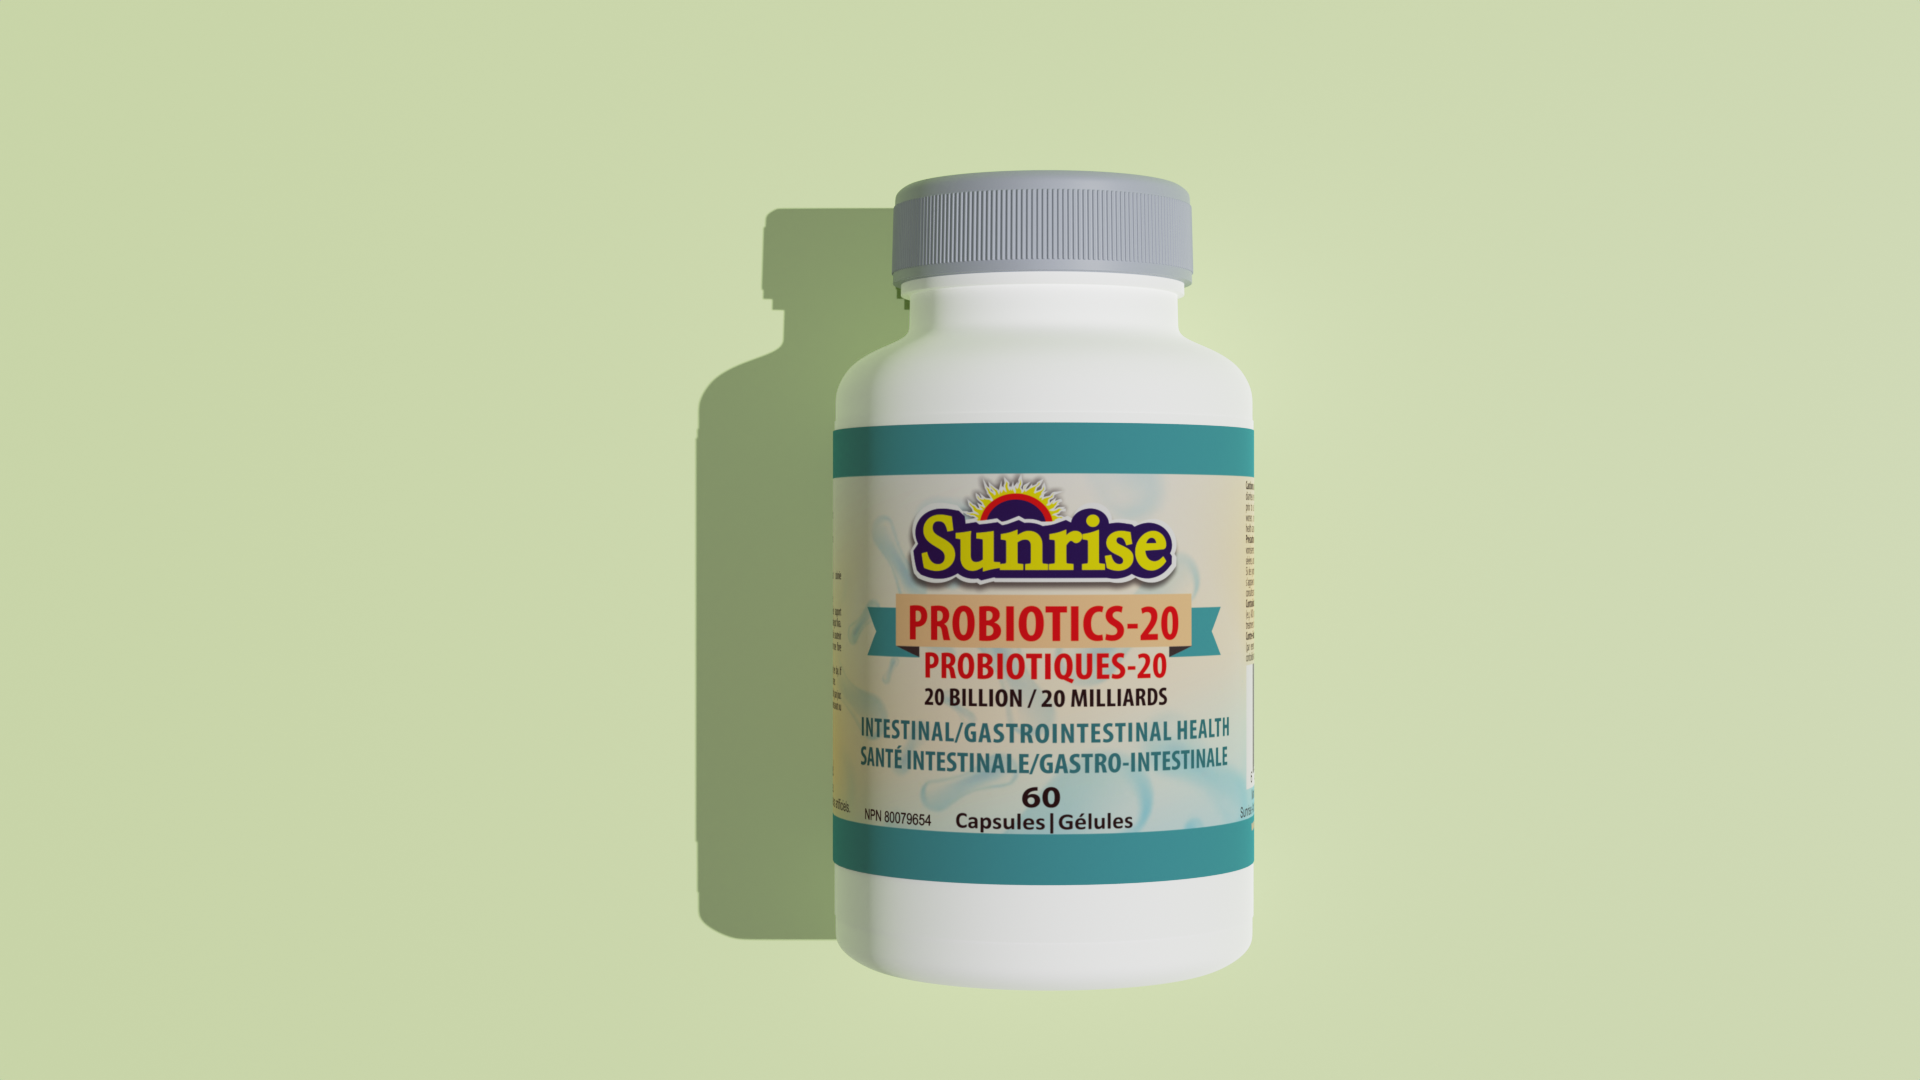 Sunrise Probiotics – 20 Billion cfu – Capsules